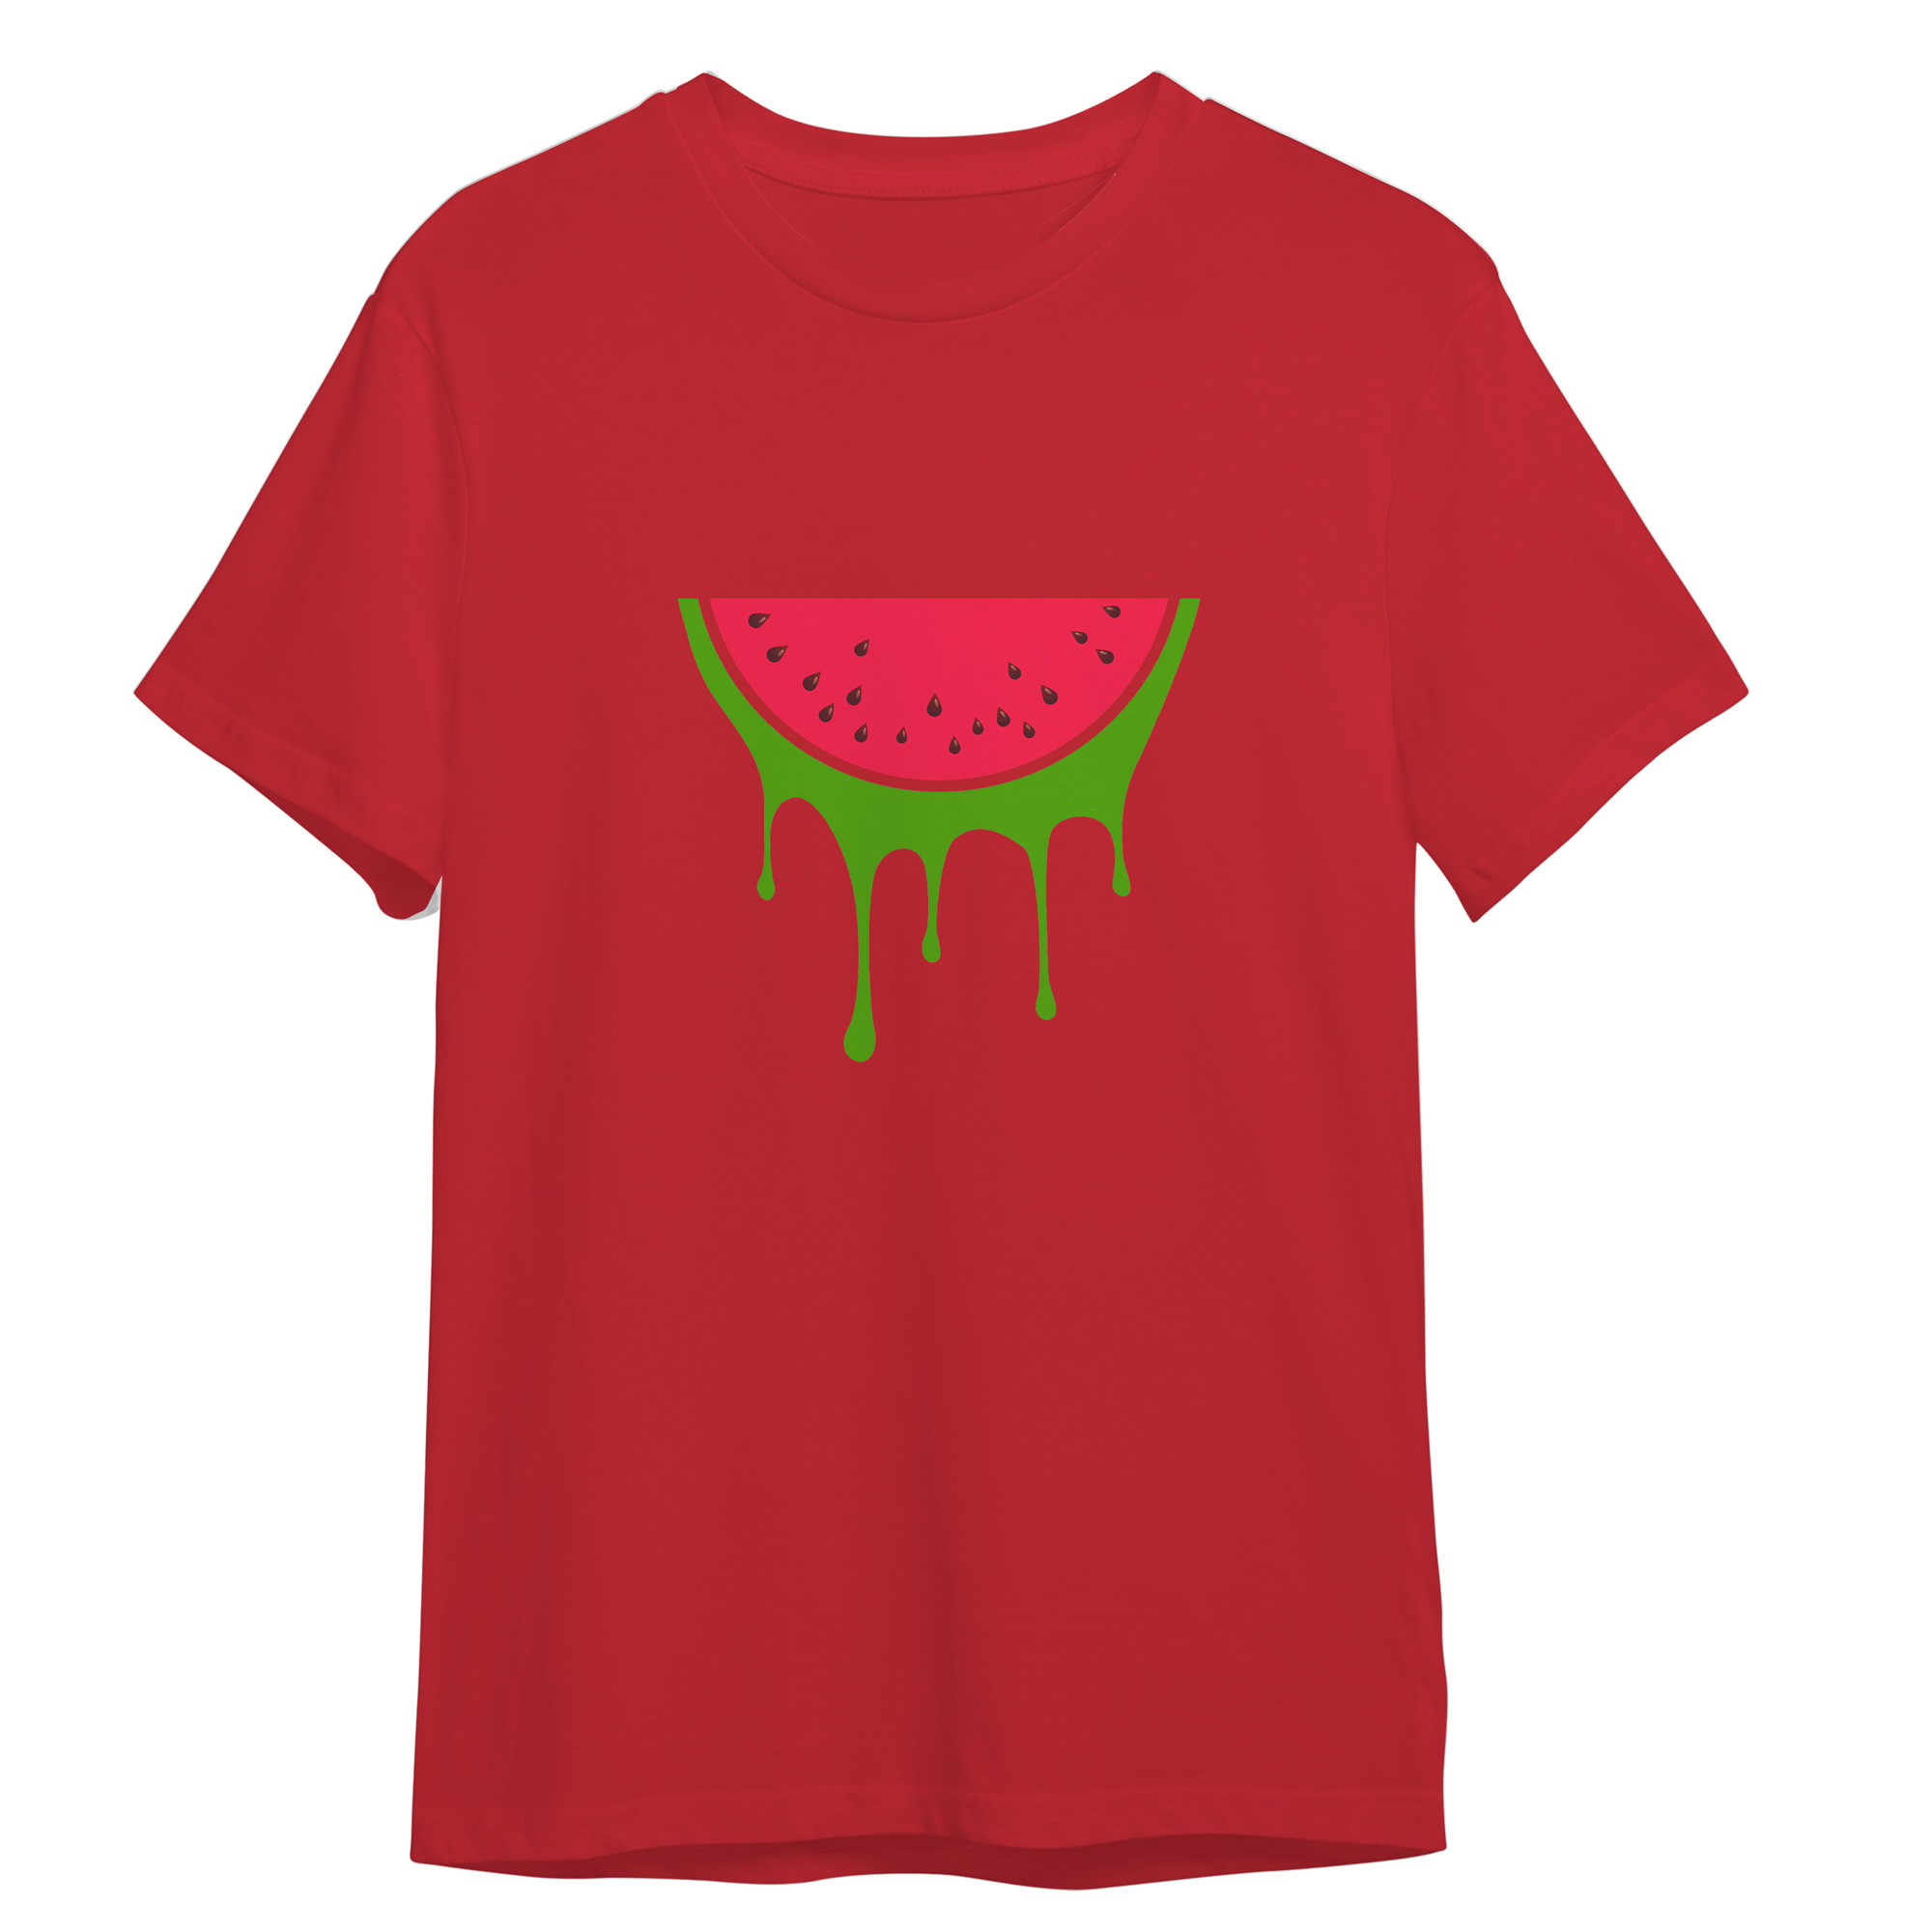 تی شرت آستین کوتاه زنانه مدل شب یلدا هندونه کد 0165 رنگ قرمز